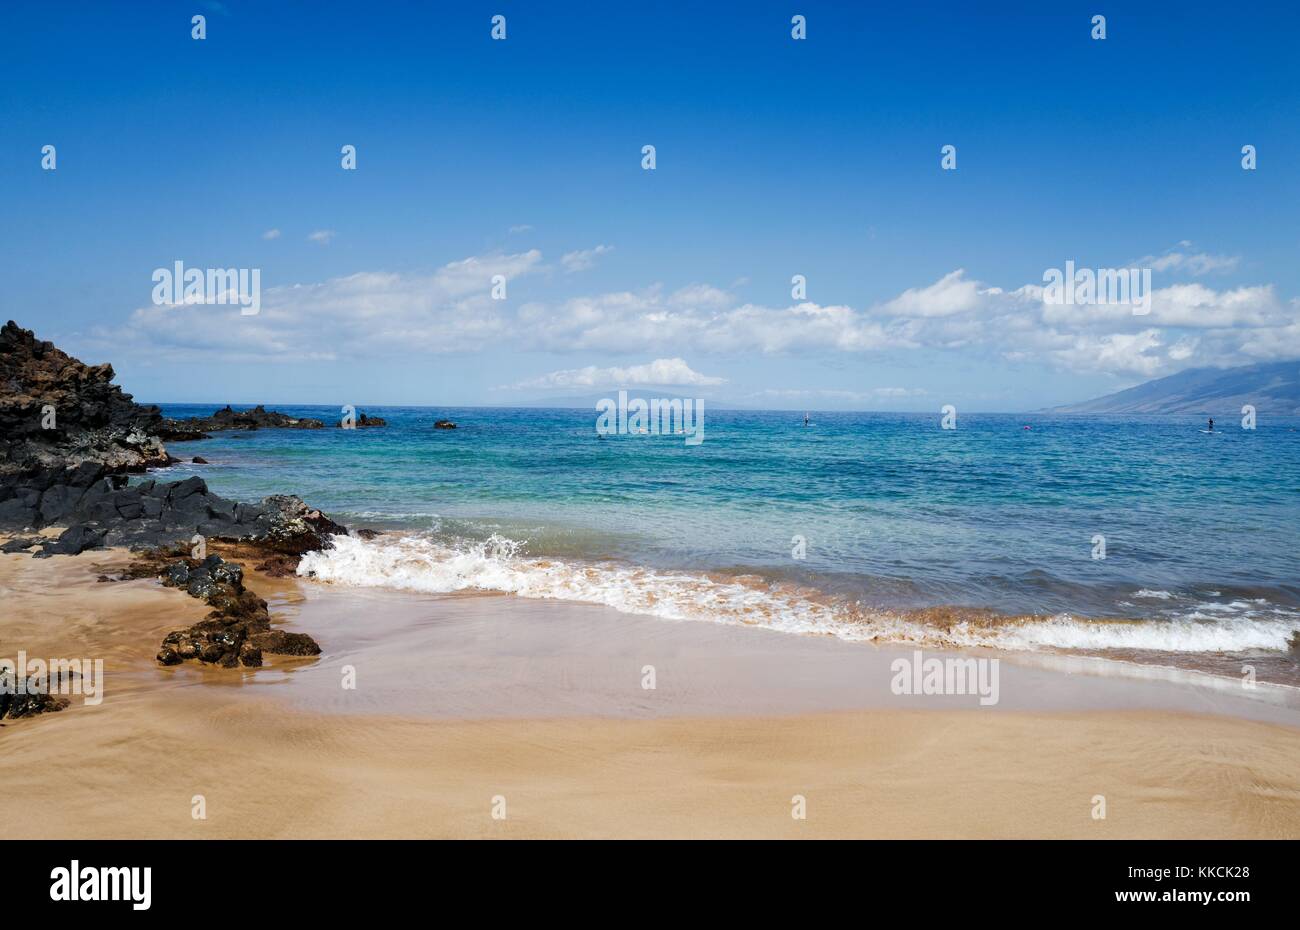 Lors d'une journée ensoleillée à la plage de Wailea, petites vagues casser sur le sable près de roches volcaniques, en tant que touristes tuba et l'utilisation du stand up paddle boards, Wailea, Maui, Hawaii, 2016. Banque D'Images